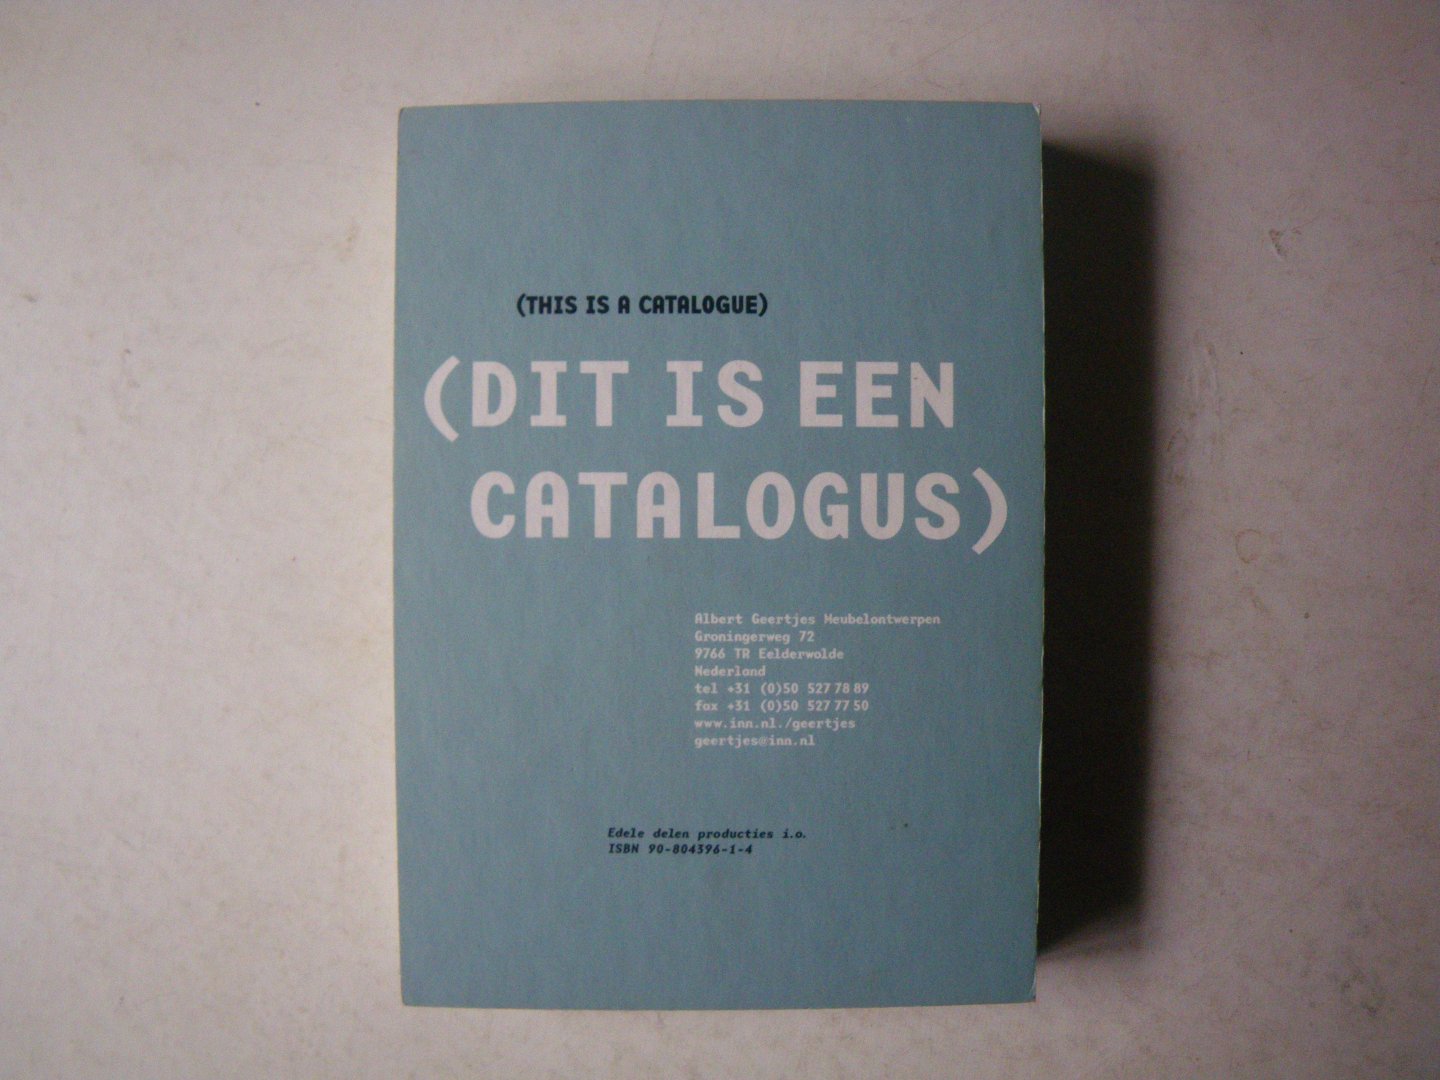 Geertjes, Albert - Peter de Kan, grafisch ontwerp - - Geertjes woordenboek. "dit is een catalogus"